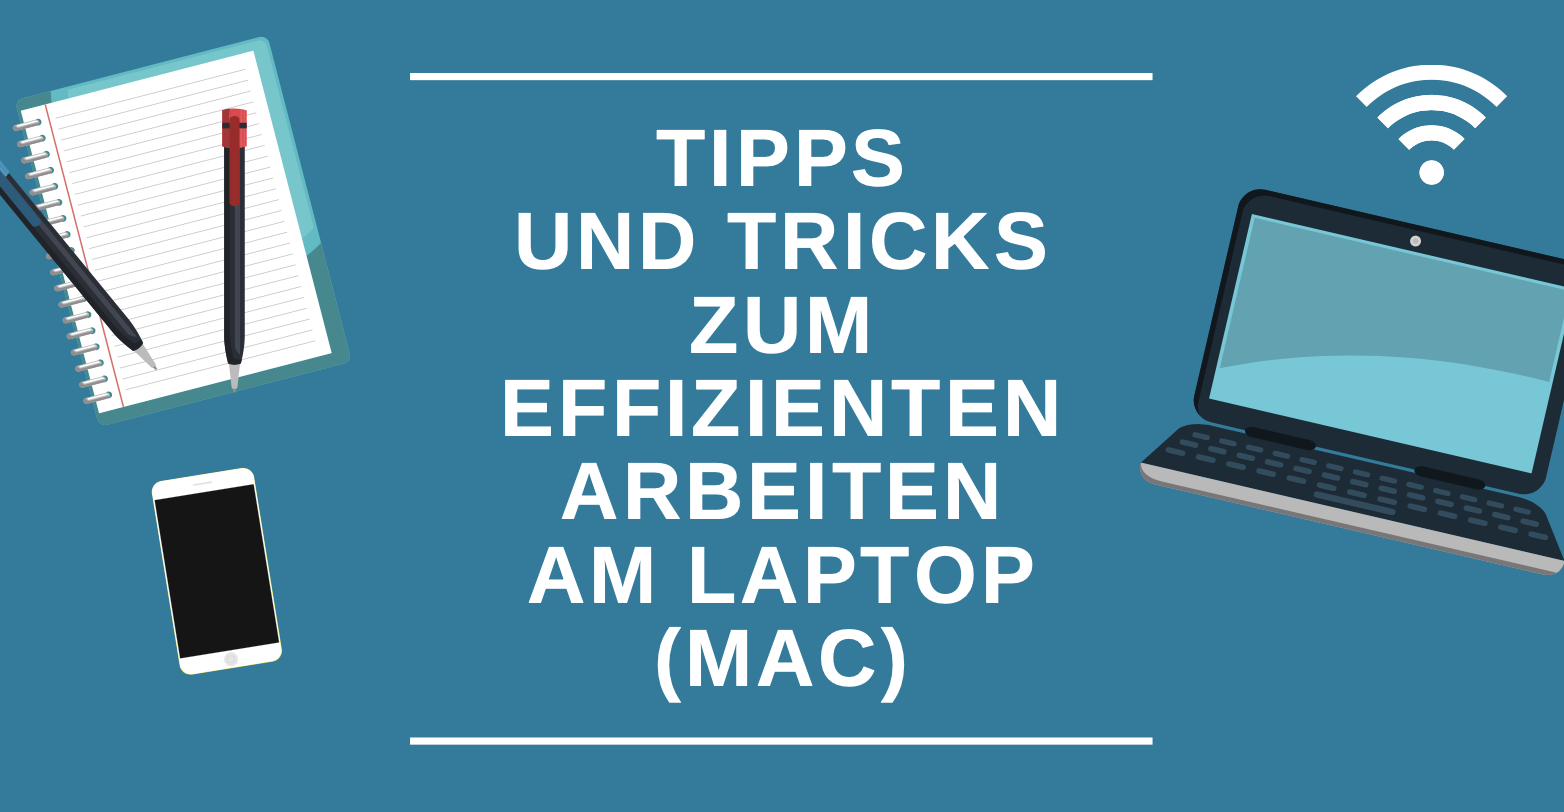 Titelbild: Tipps und Tricks zum Effizienten Arbeiten am Laptop (Mac)